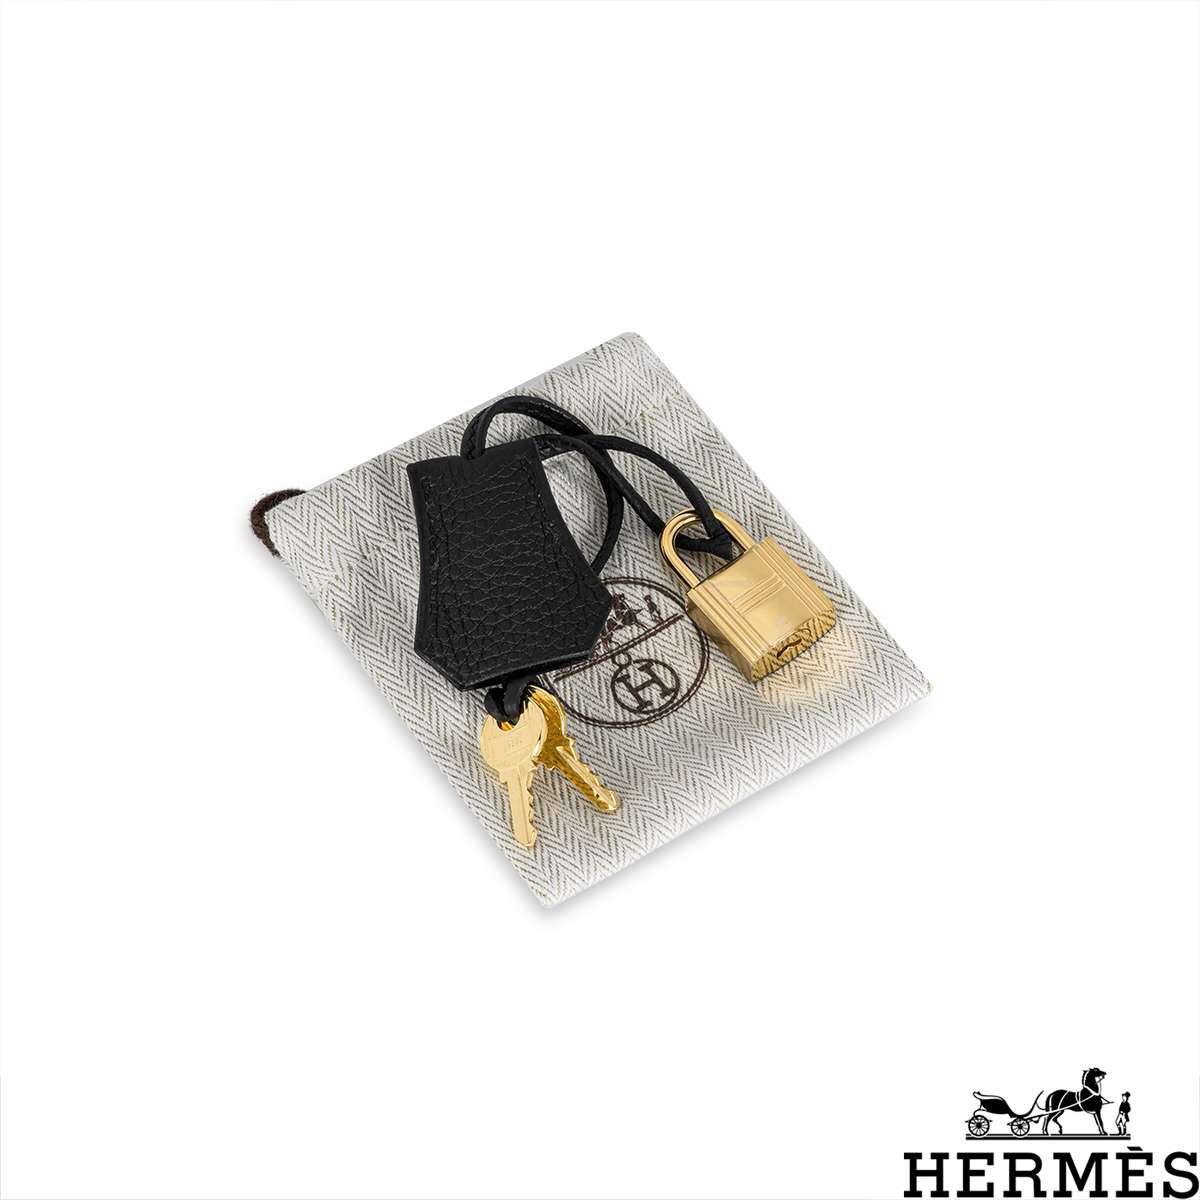 Hermes Birkin 30 Noir Black Togo GHW – I MISS YOU VINTAGE